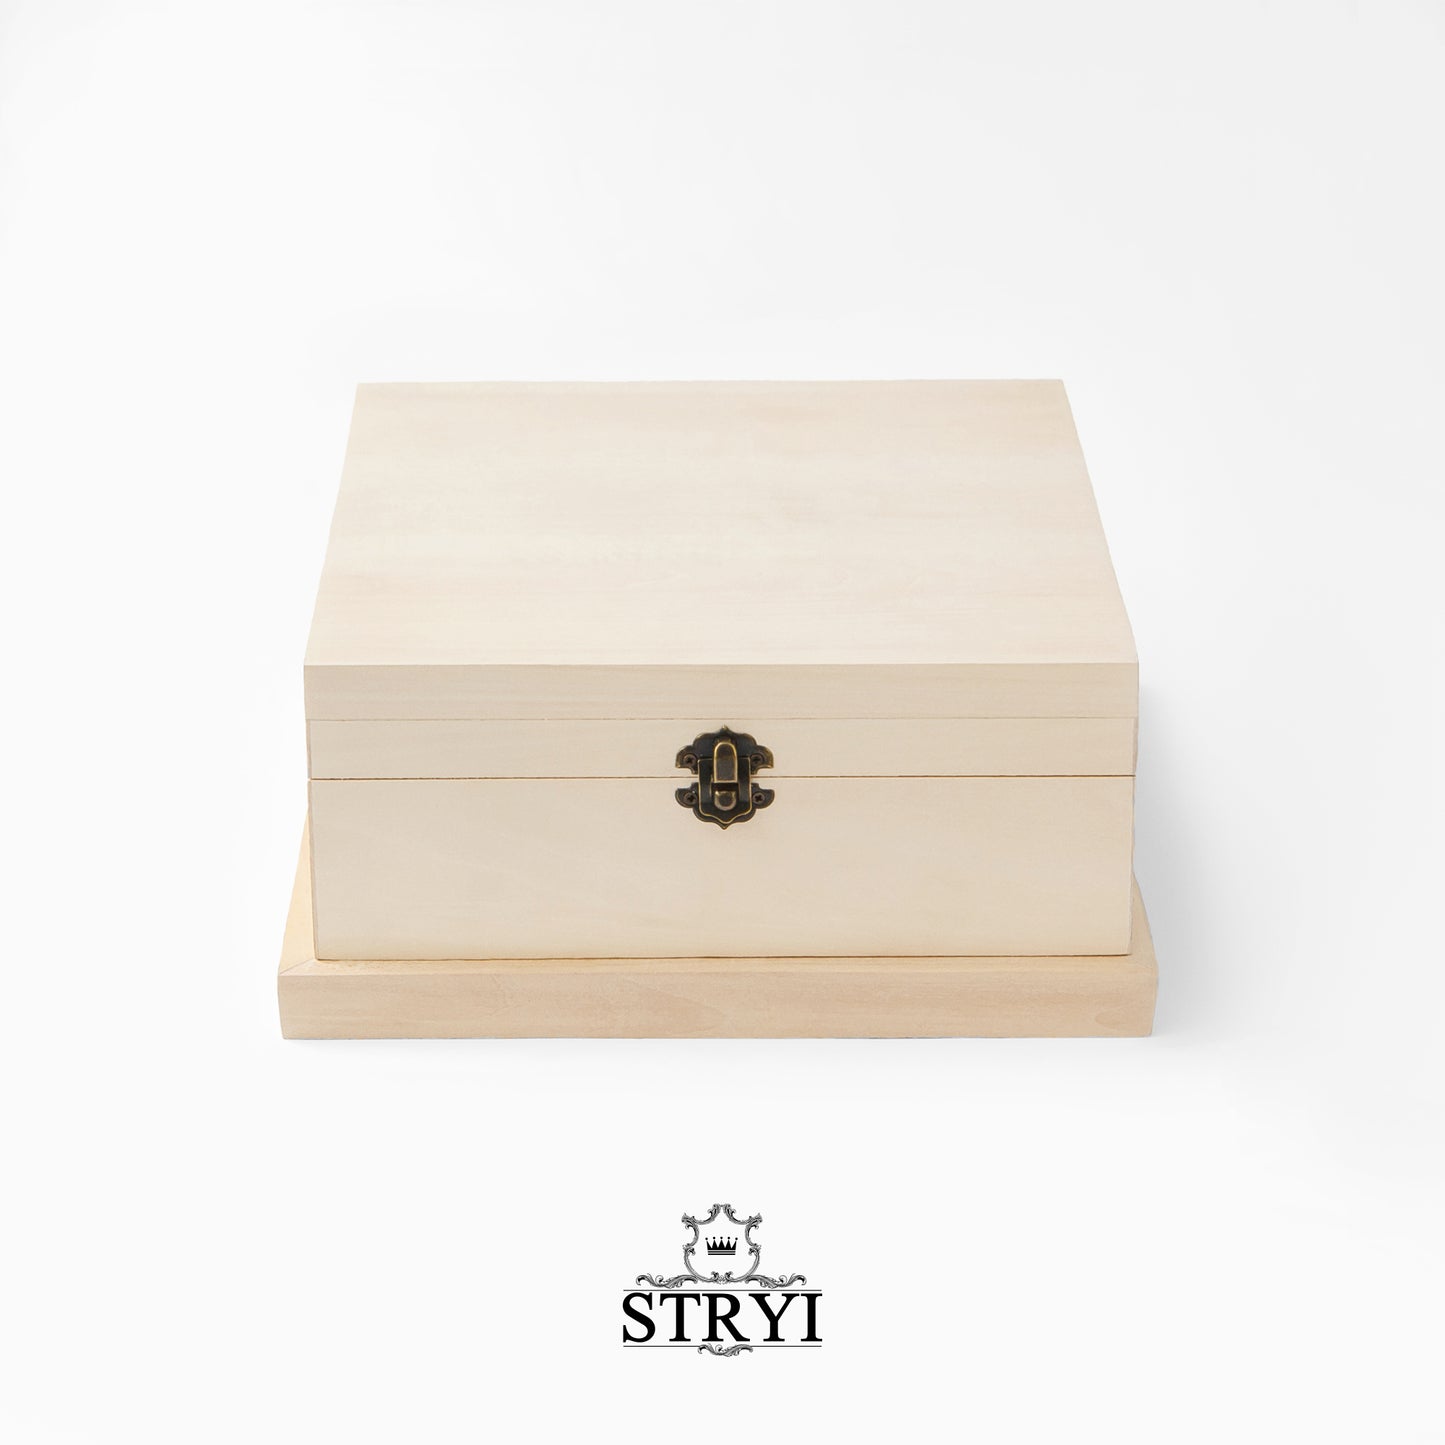 Caja de madera, pieza en blanco tallada en madera con accesorios, caja de joyería de lima tallada en madera, pieza en blanco para tallar, reserva de chatarra, creatividad, arte